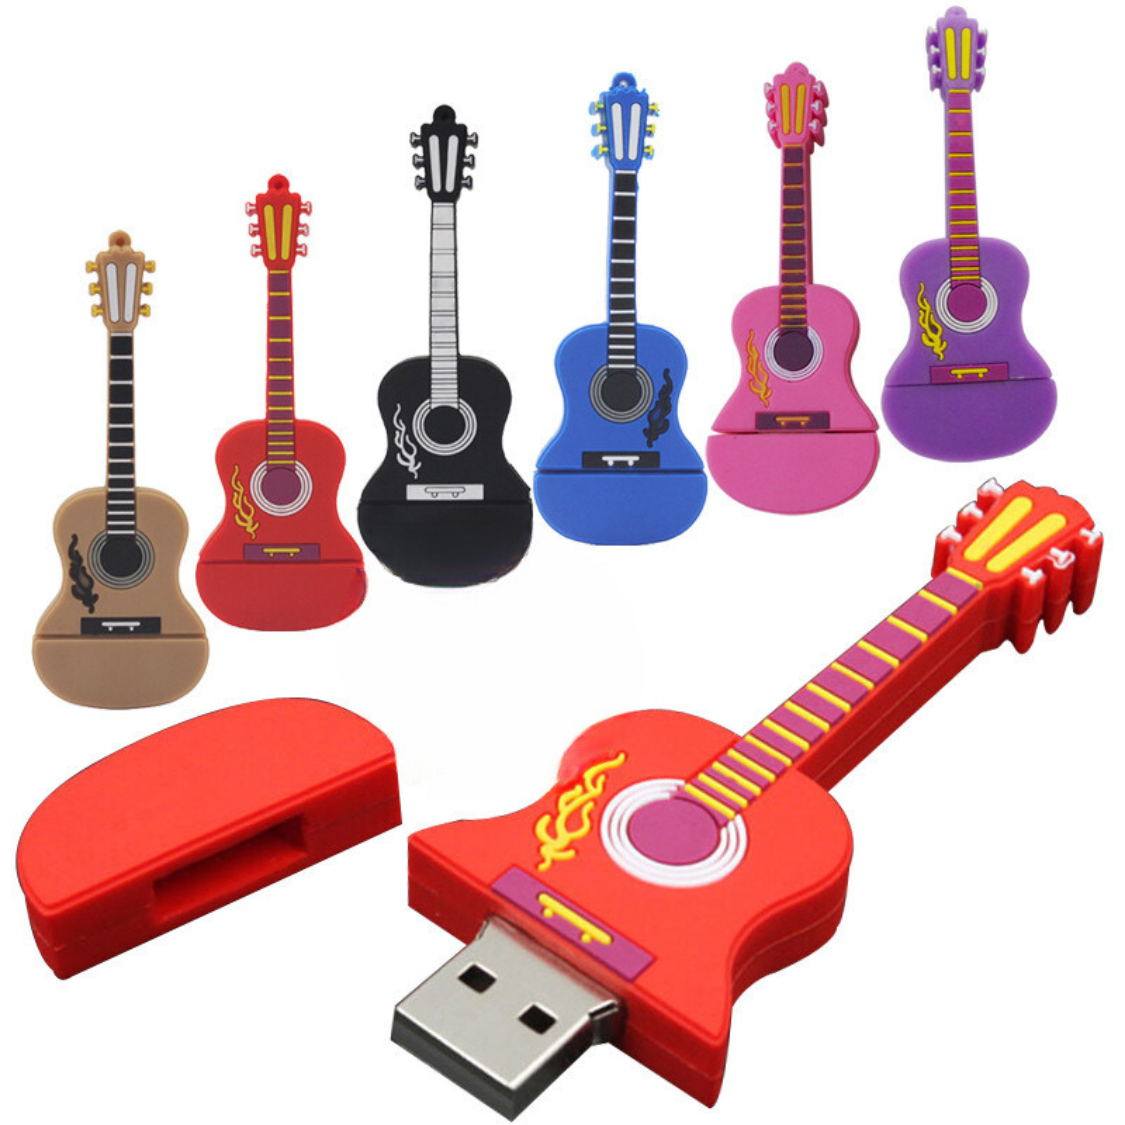 Thème musical - Clé USB pour guitare